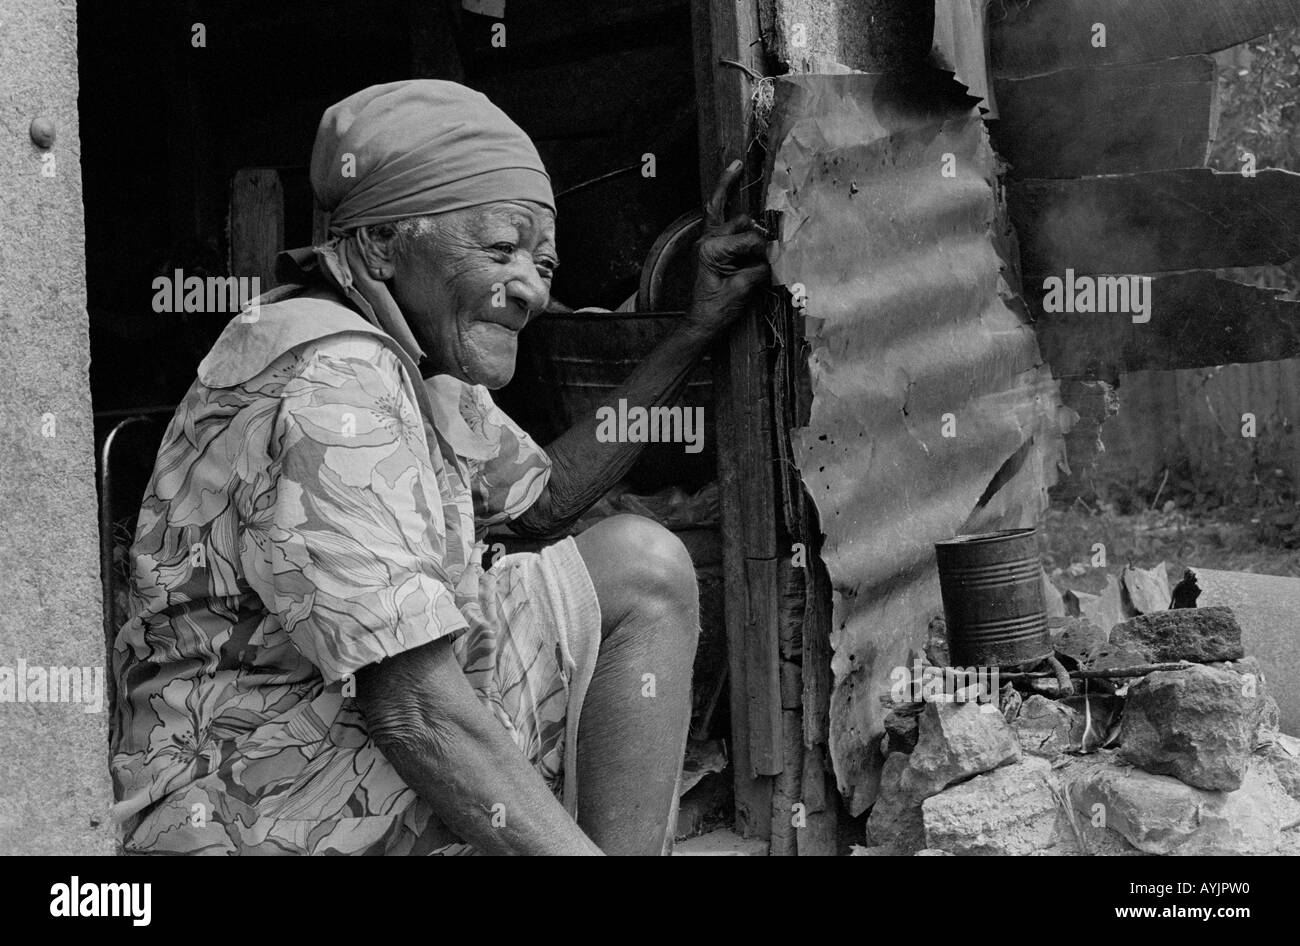 Ritratto B/N di una donna anziana indigente che vive nella zona più povera della città spagnola. Giamaica Foto Stock